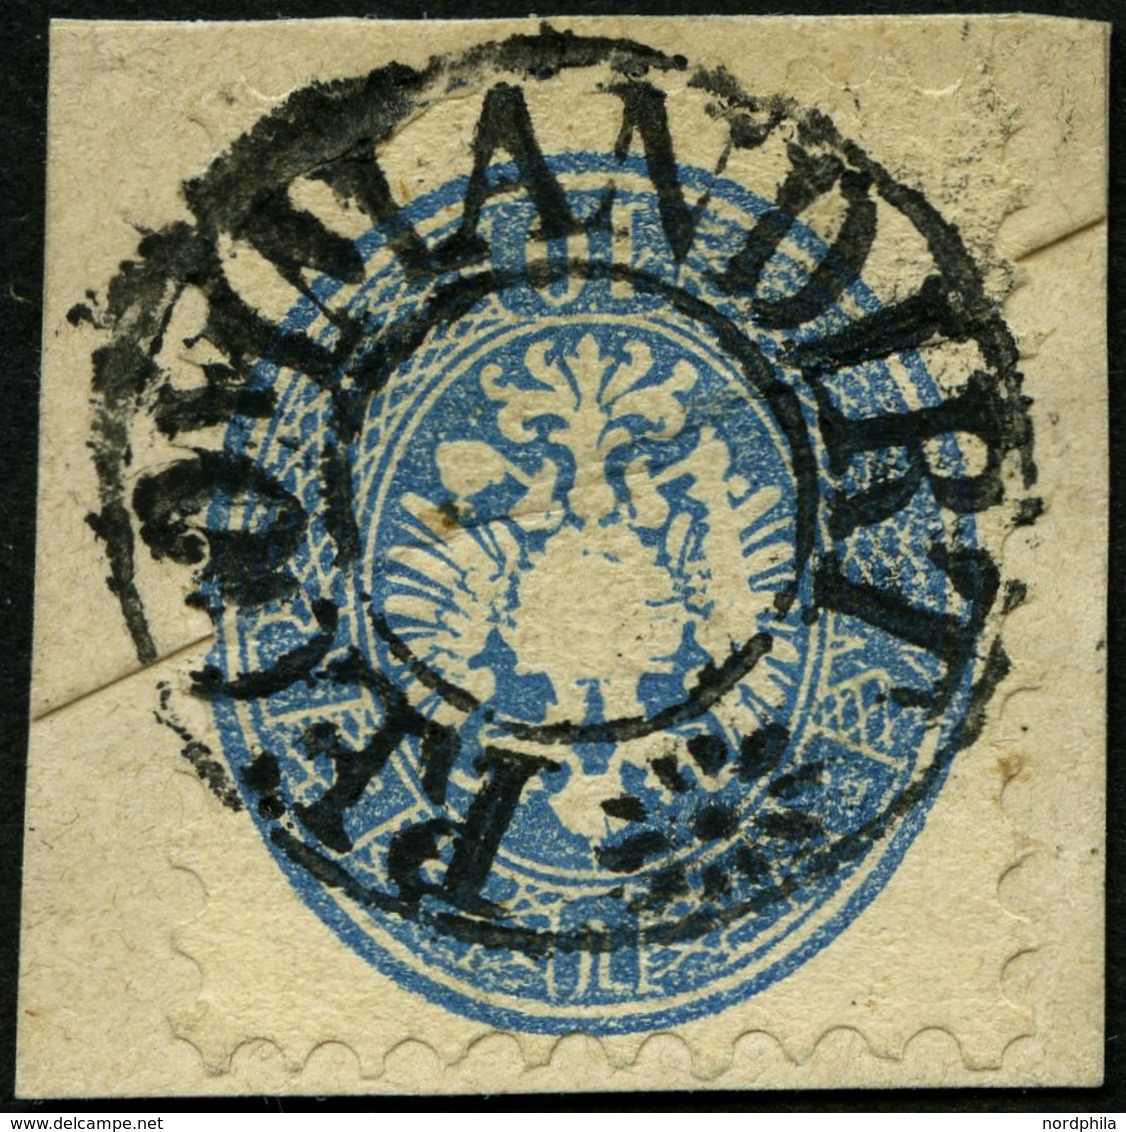 ÖSTERREICH 33 BrfStk, 1863, 10 Kr. Blau, Mit Wz., Mit Seltenem Stummen K2 RECOMMDIRT, Prachtbriefstück, Signiert - Used Stamps